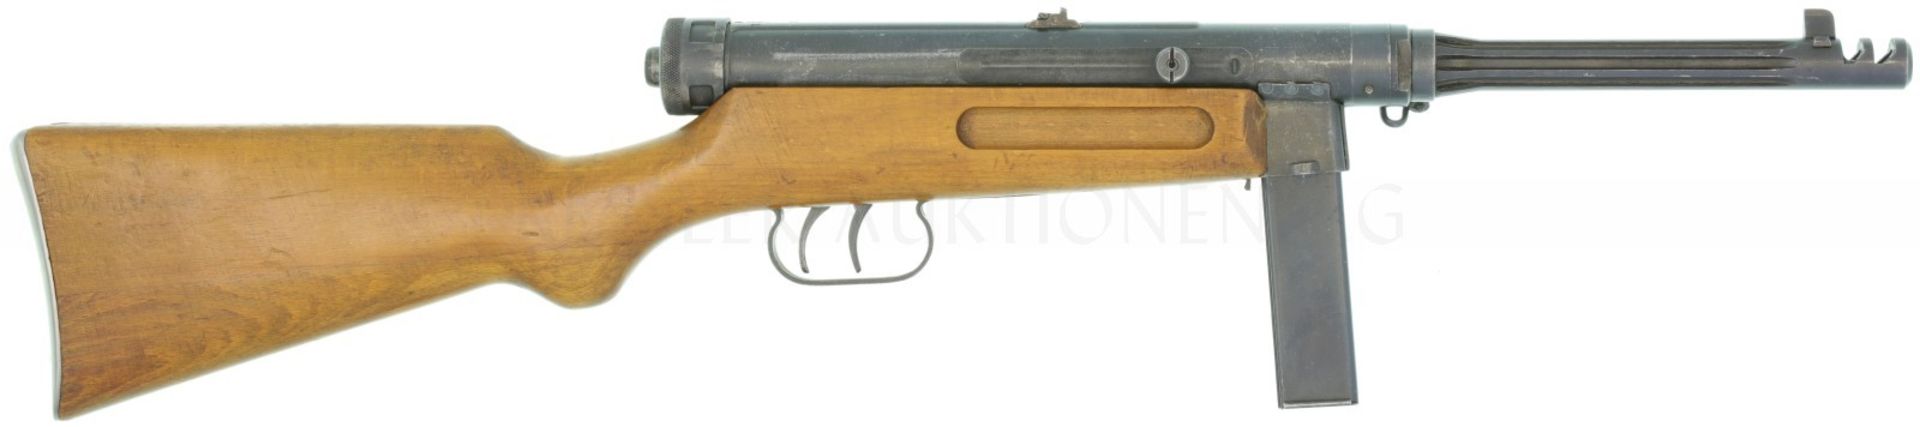 Maschinenpistole, Beretta Mod. 1938/42, Kal. 9mmP